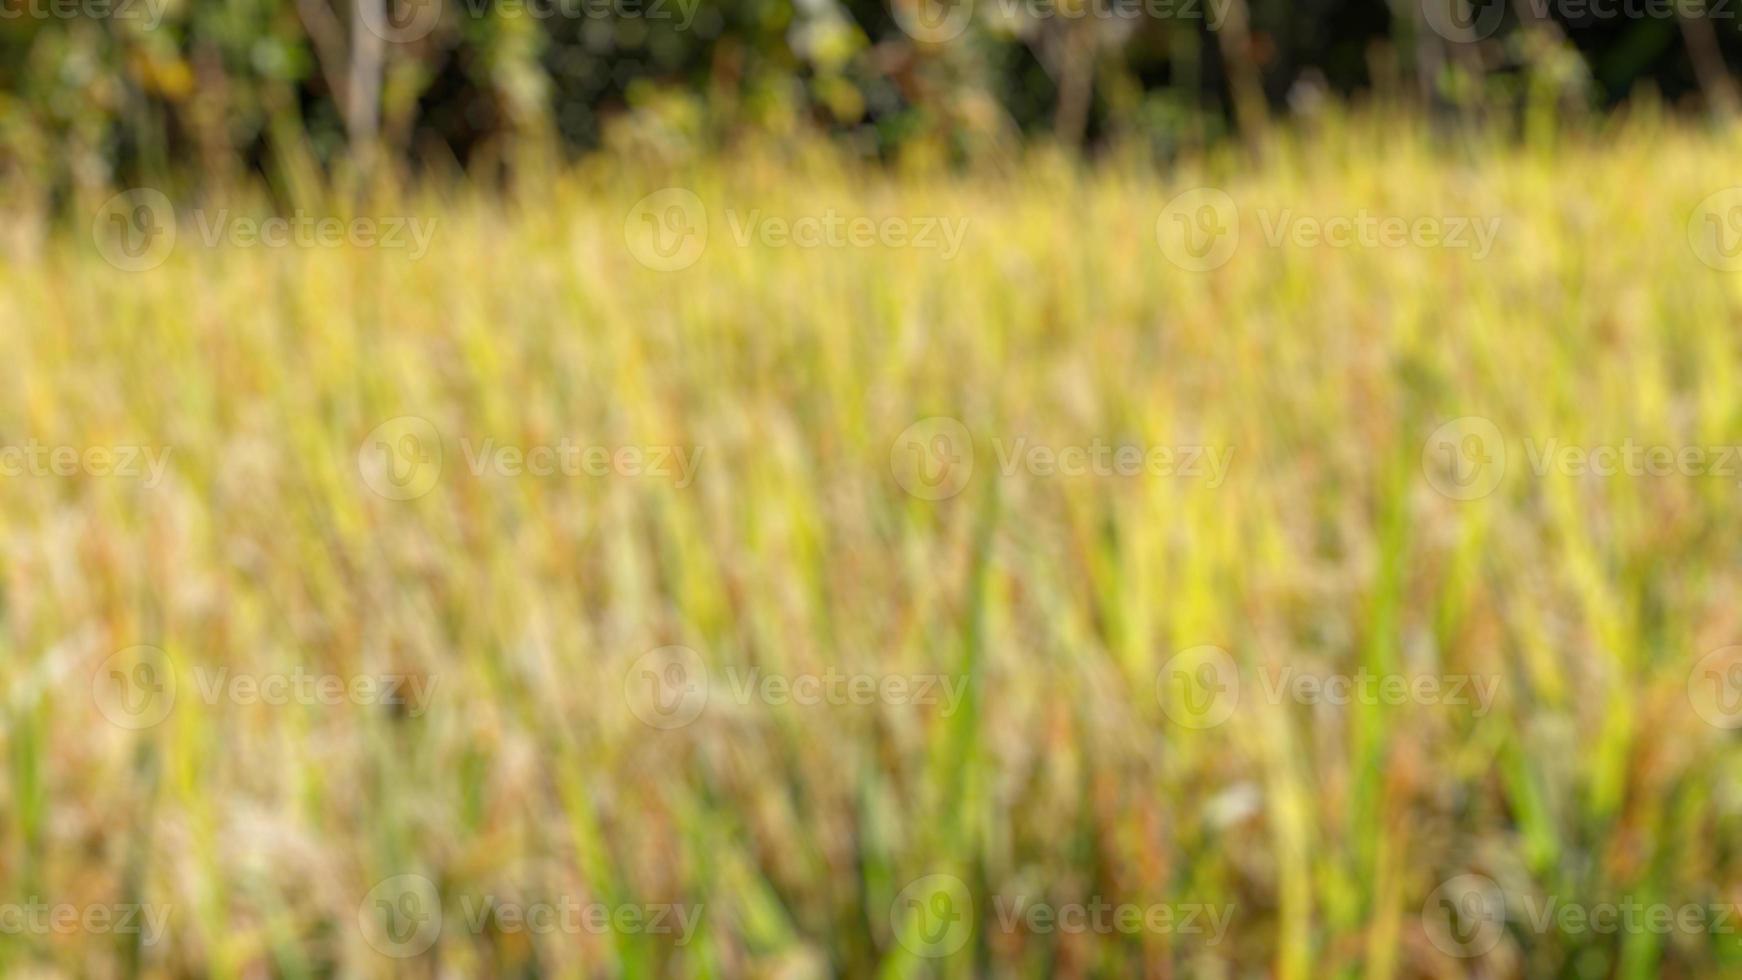 verschwommenes Foto von Reisfeldern mit Reis, der gelb geworden ist und geerntet werden kann